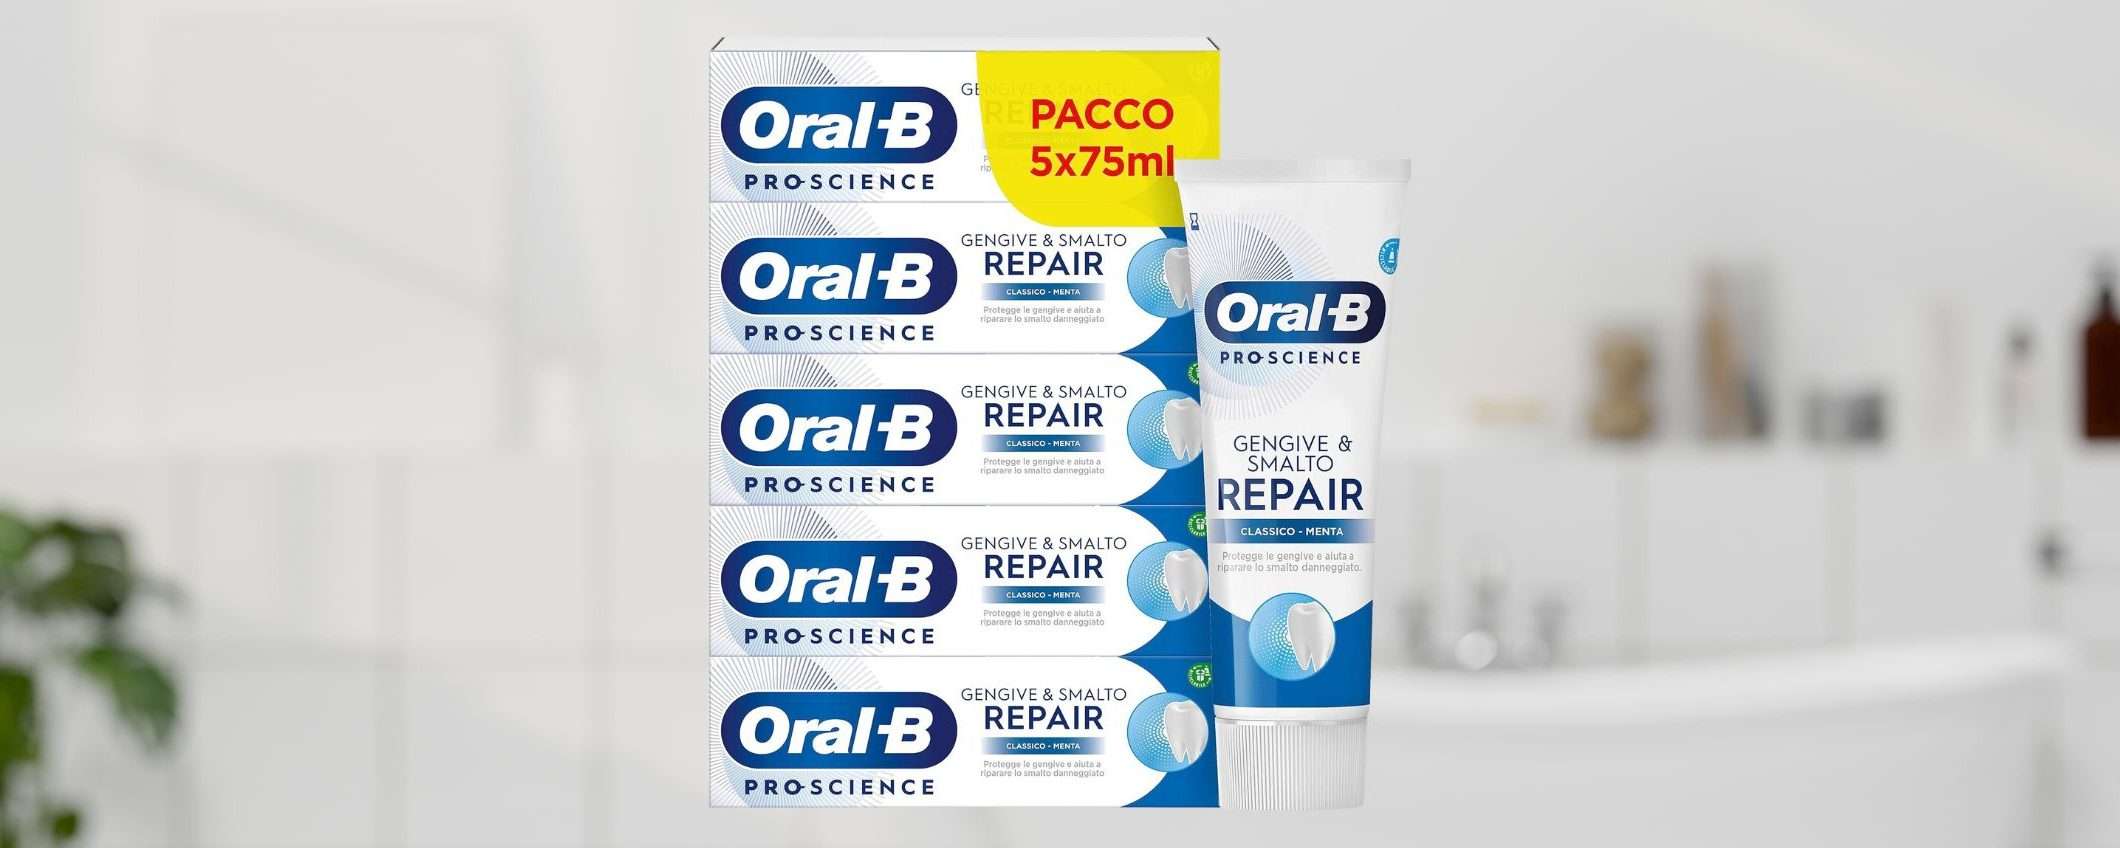 Dentifricio Oral-B Gengive e Smalto: PACCO SCORTA in offerta (-33%)